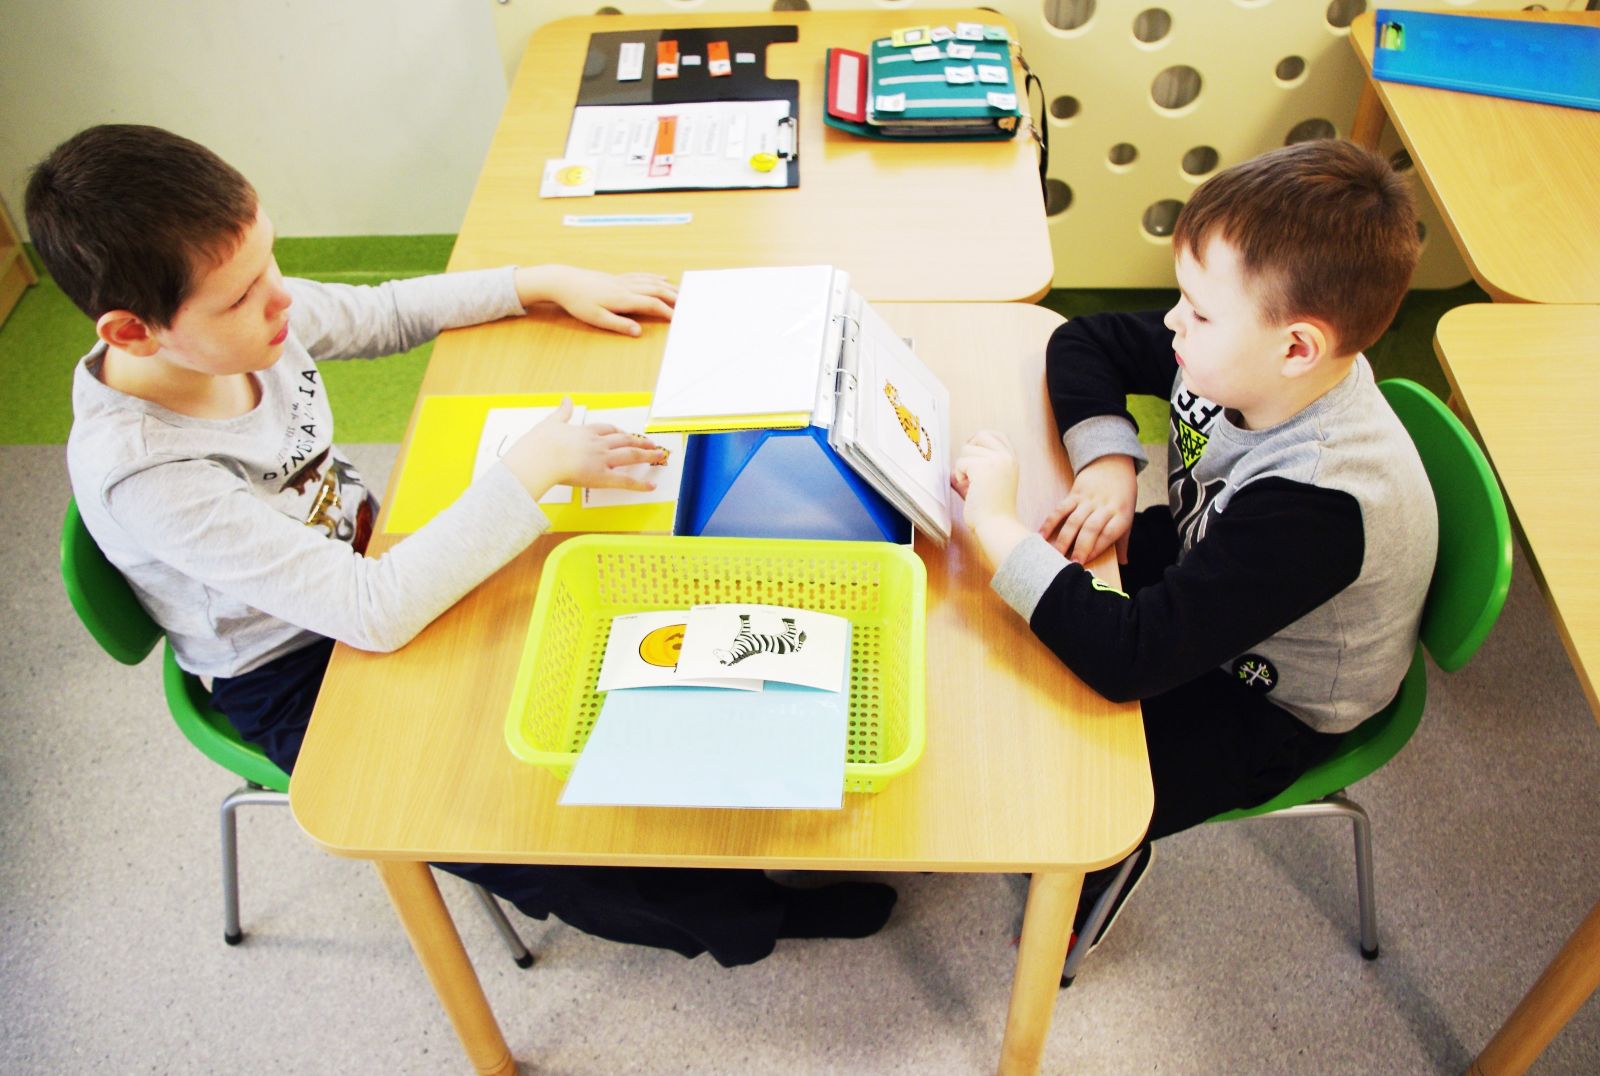 dwoje dzieci siedzi na przeciwko siebie przy stoliku i uczą się języka obrazkowego, czyli alternatywnych metod komunikacji